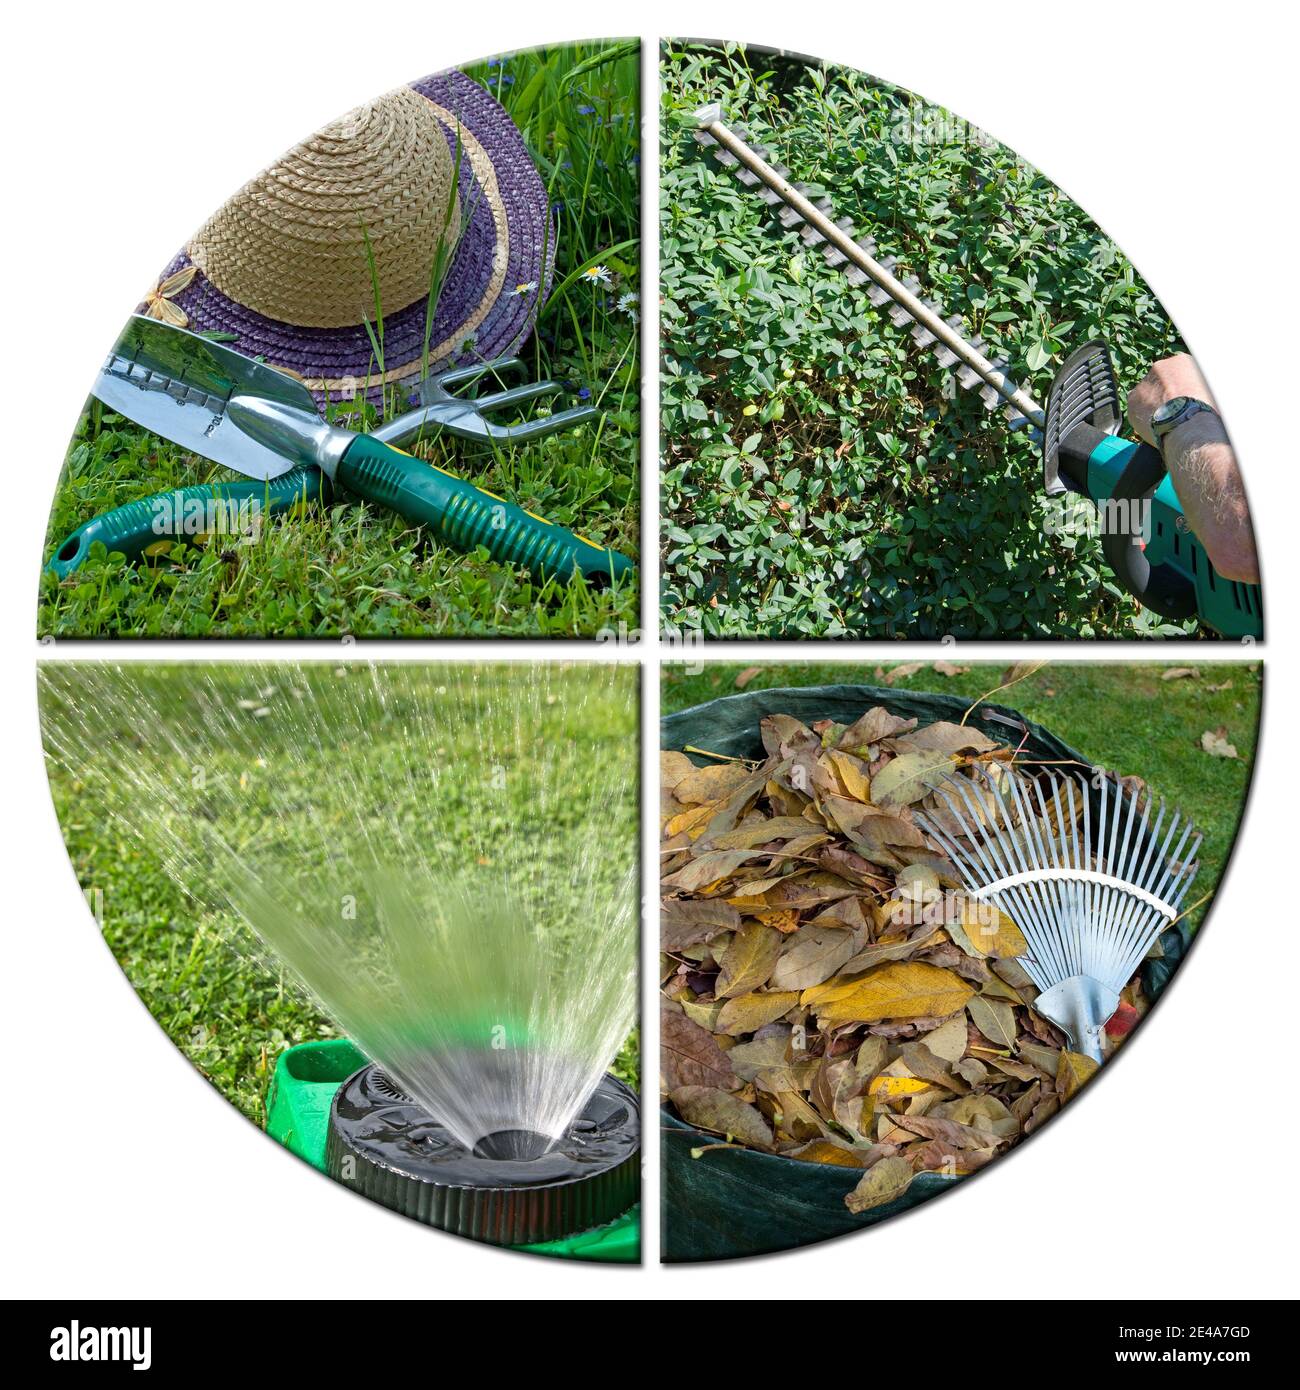 Bilder von der Gartenarbeit in einer Collage Stockfoto